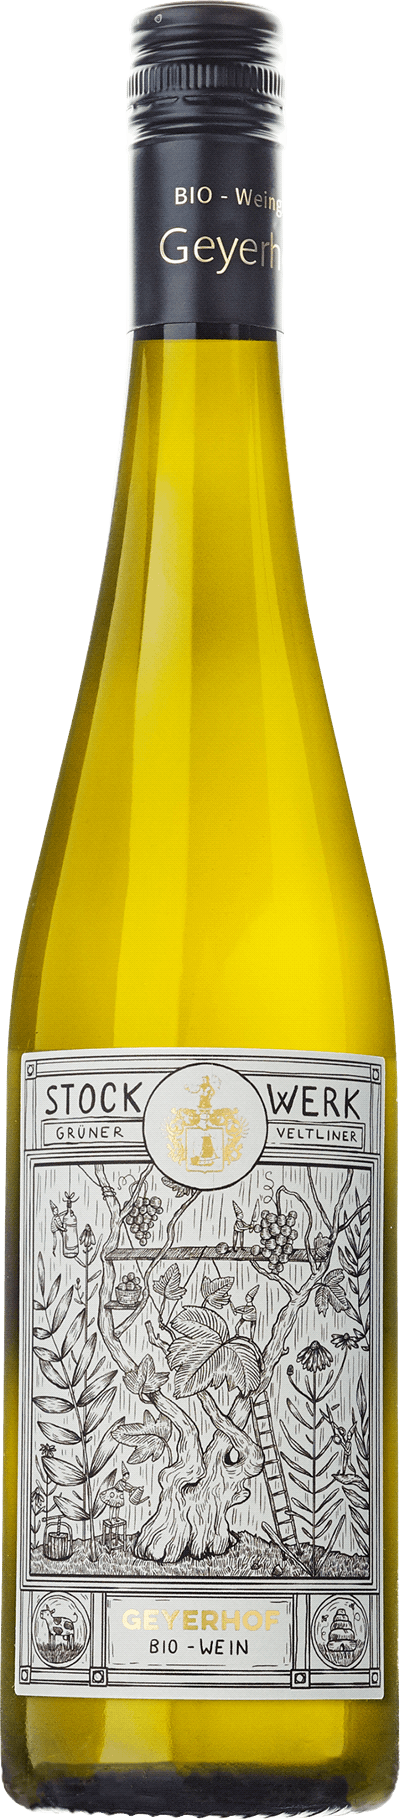 Geyerhof_Stockwerk_winetable